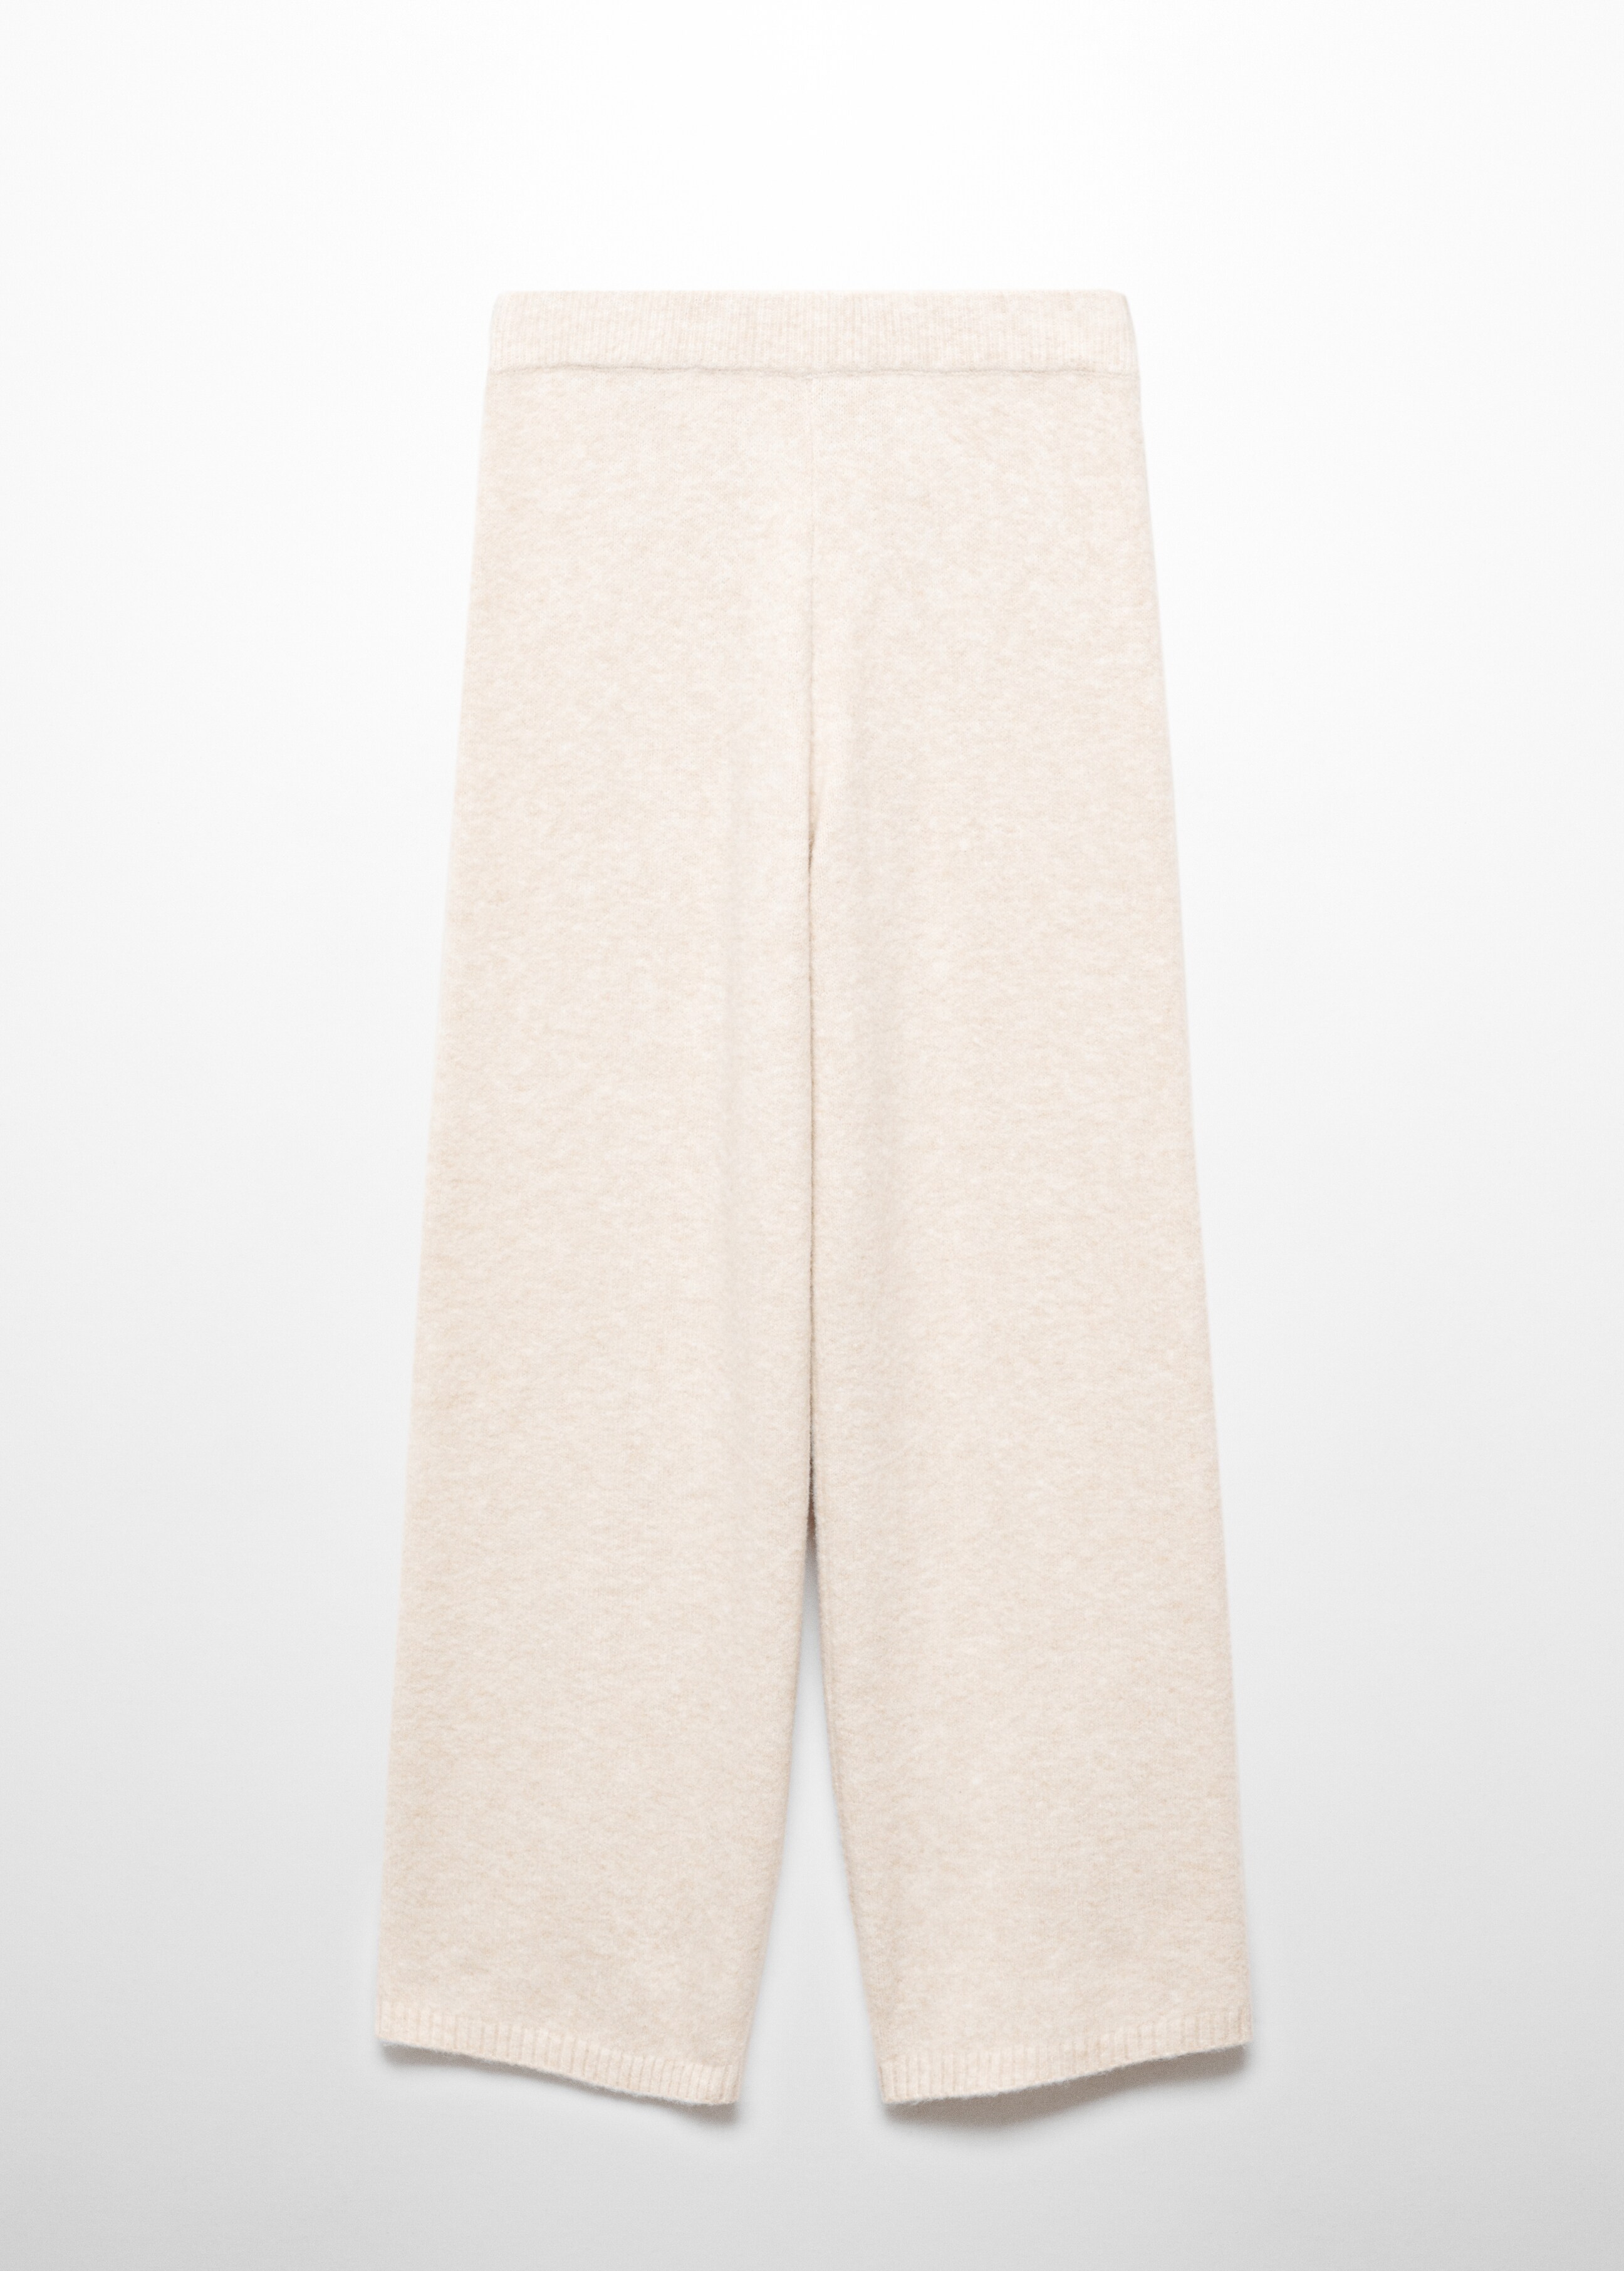 Pantalón punto algodón lino - Artículo sin modelo